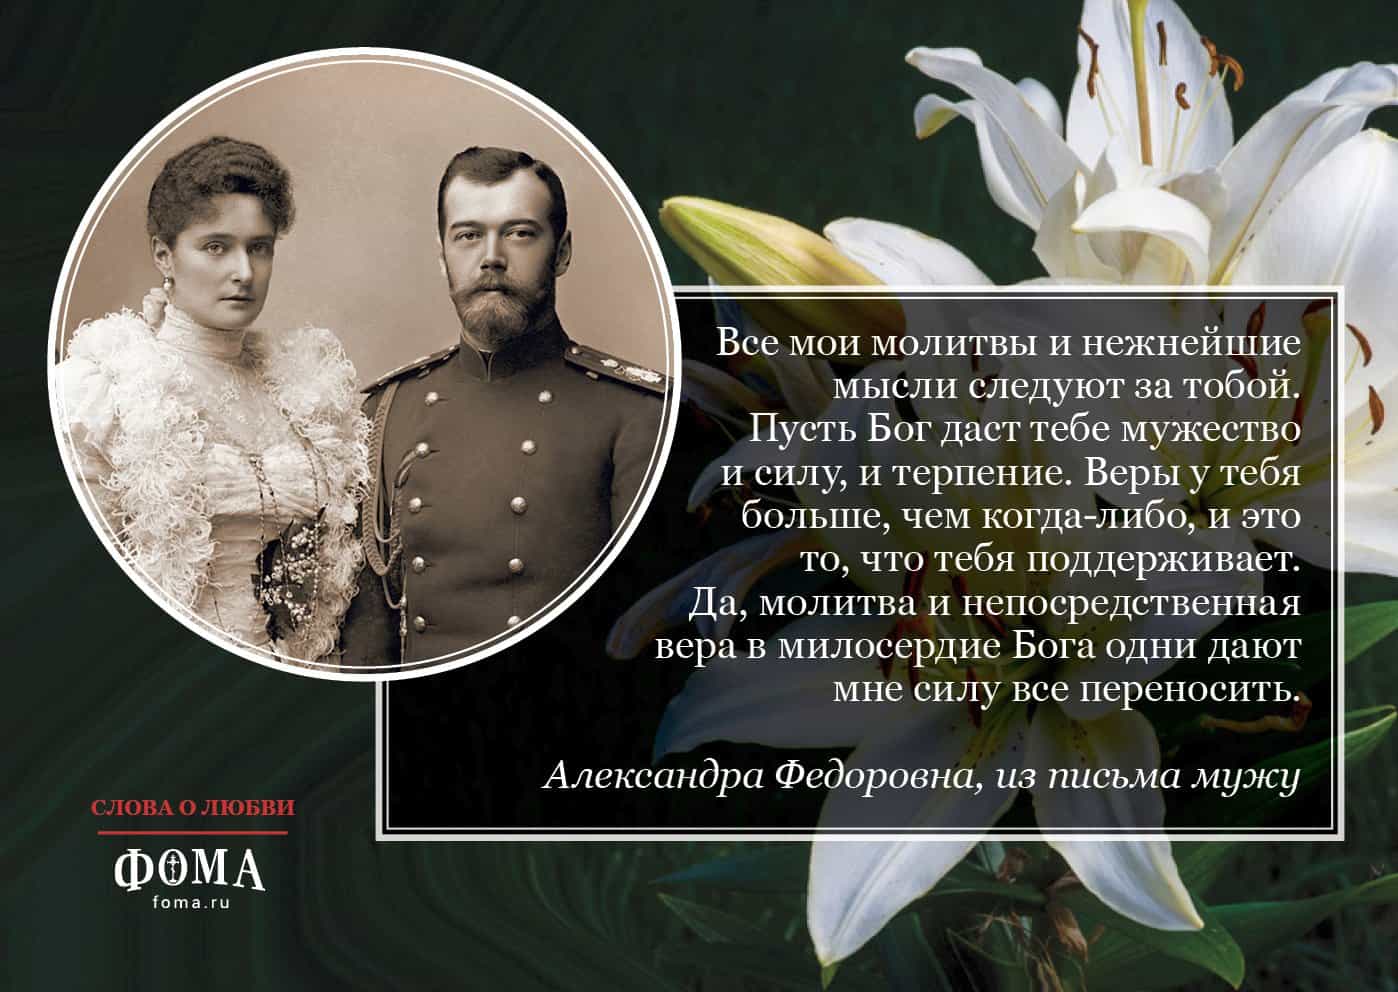 Личная жизнь николая 2. Письма императрицы Александры Федоровны к императору.